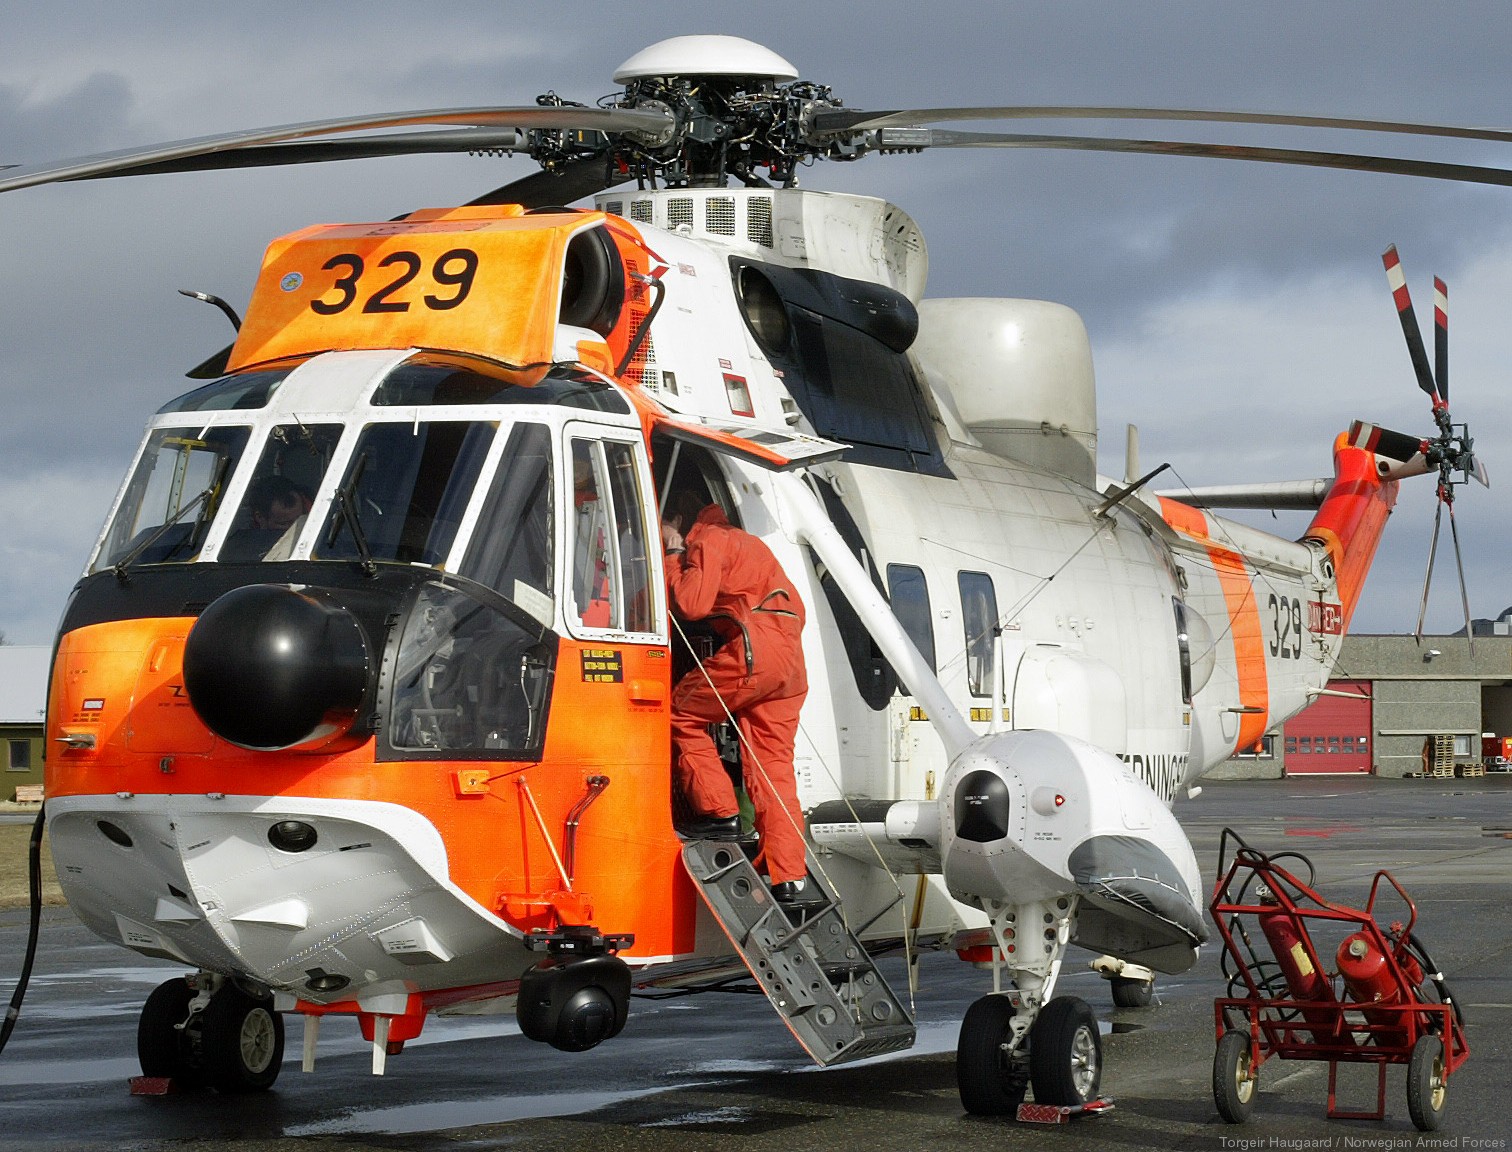 westland ws-61 sea king royal norwegian air force sar rescue 330 squadron skvadron luftforsvaret 329 08